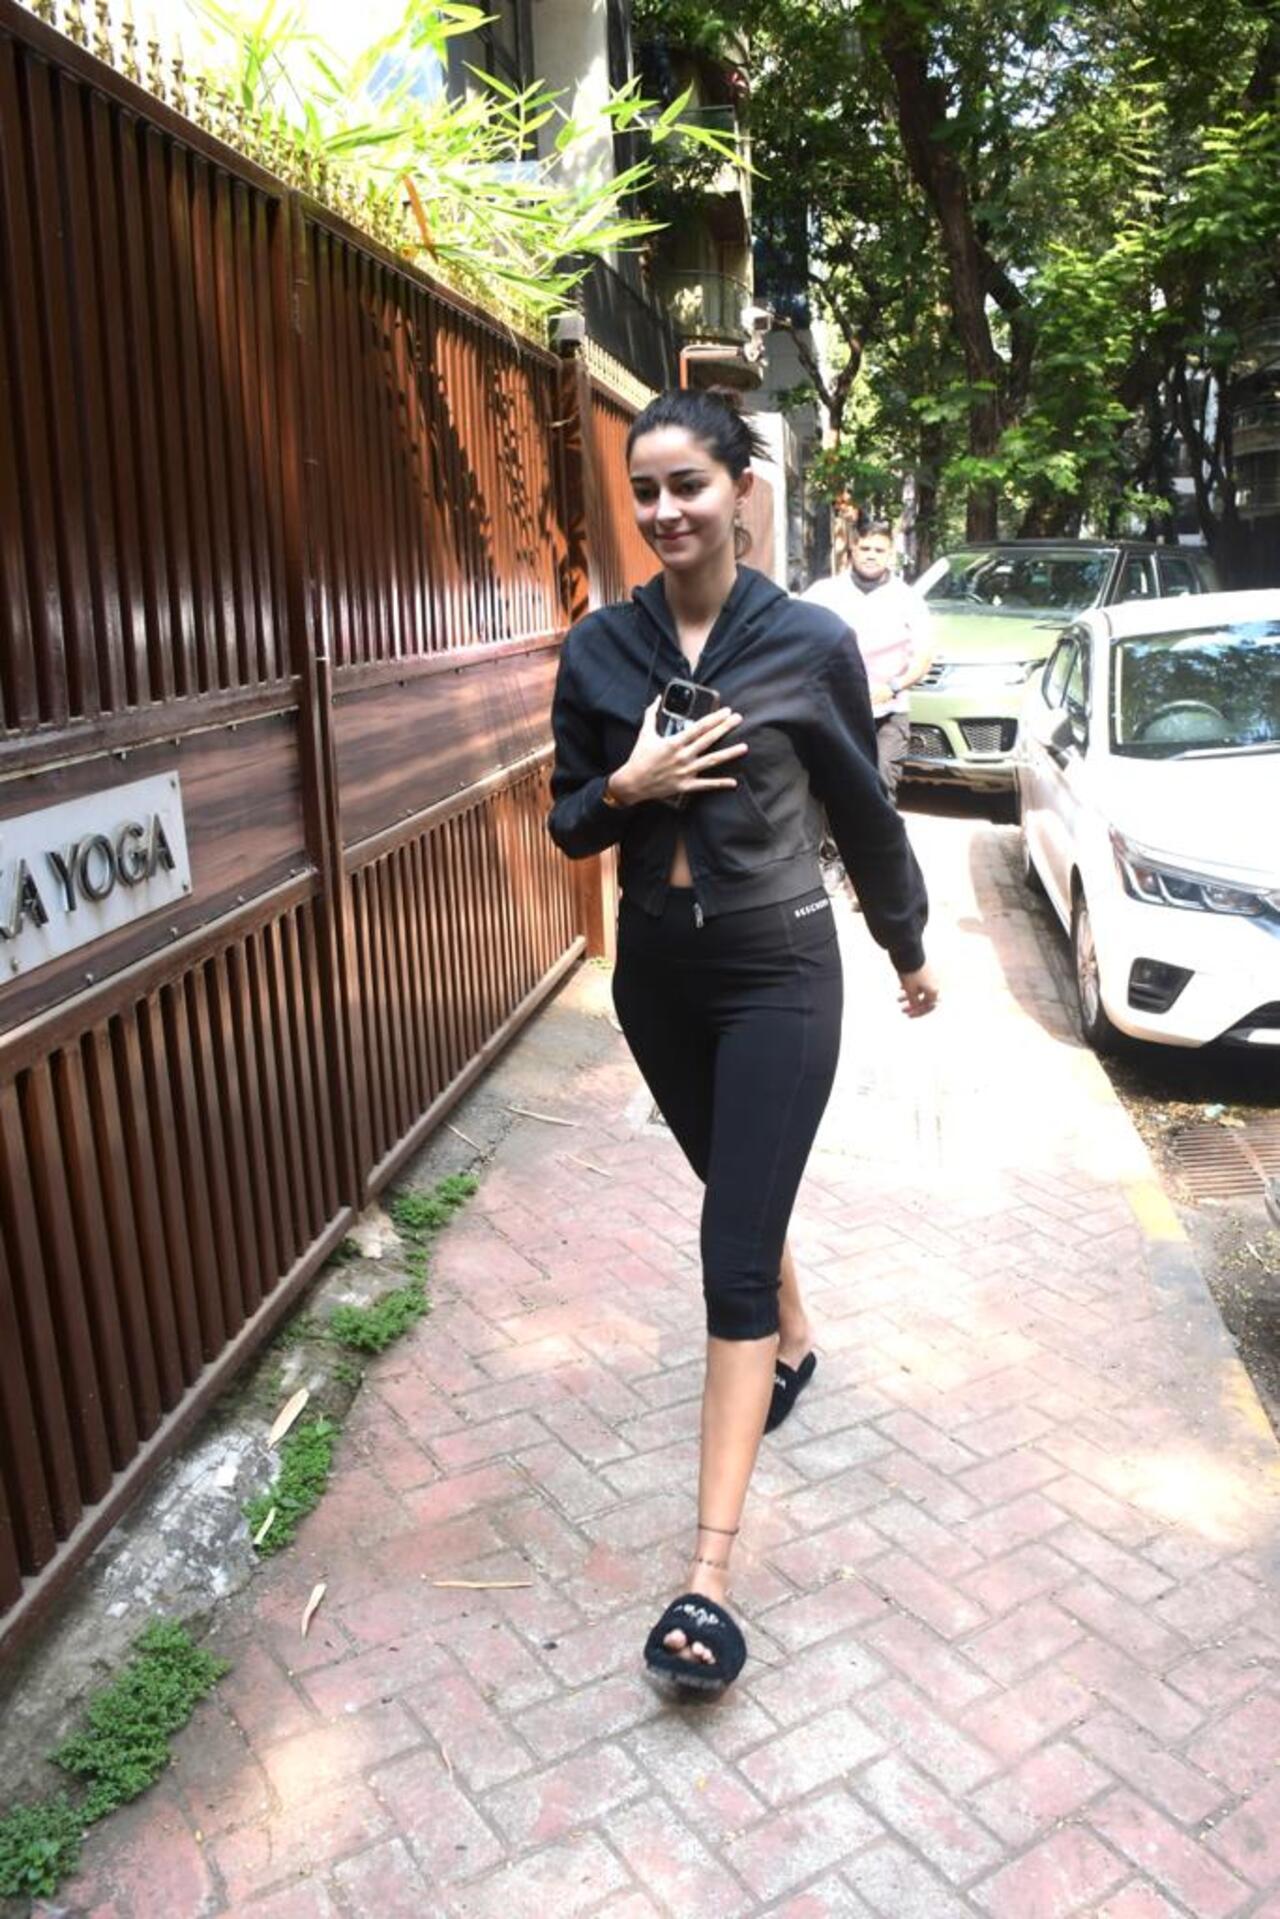 Ananya Panday was clicked at a yoga studio